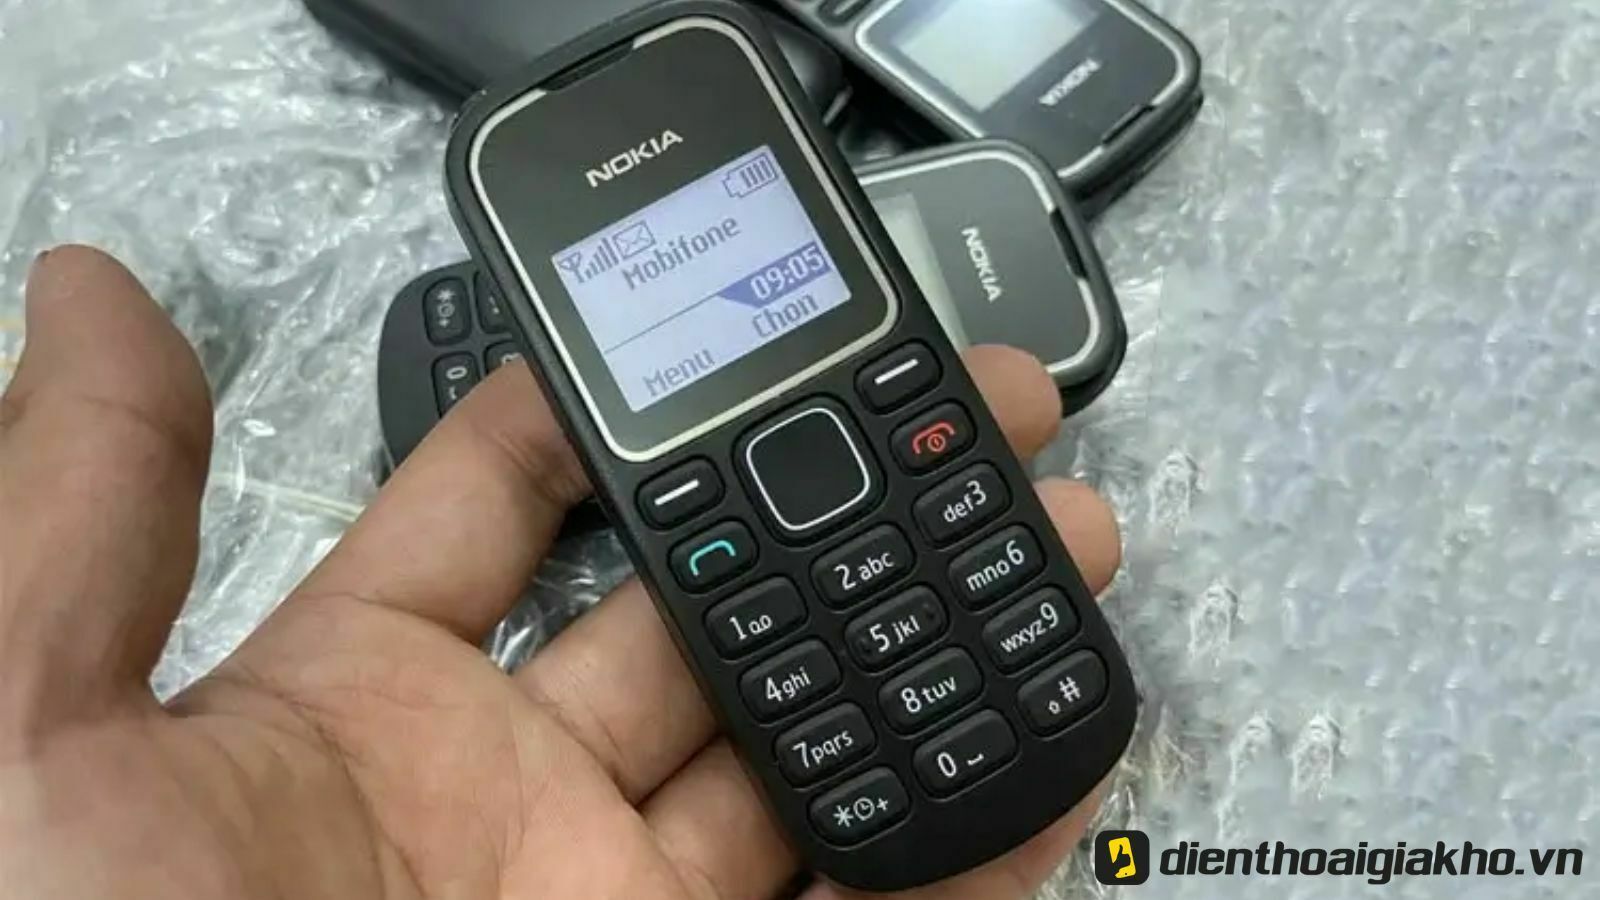 Tạo hình nền Nokia 1280 độc đáo theo ảnh của bạn  Hình nền Nền Hình